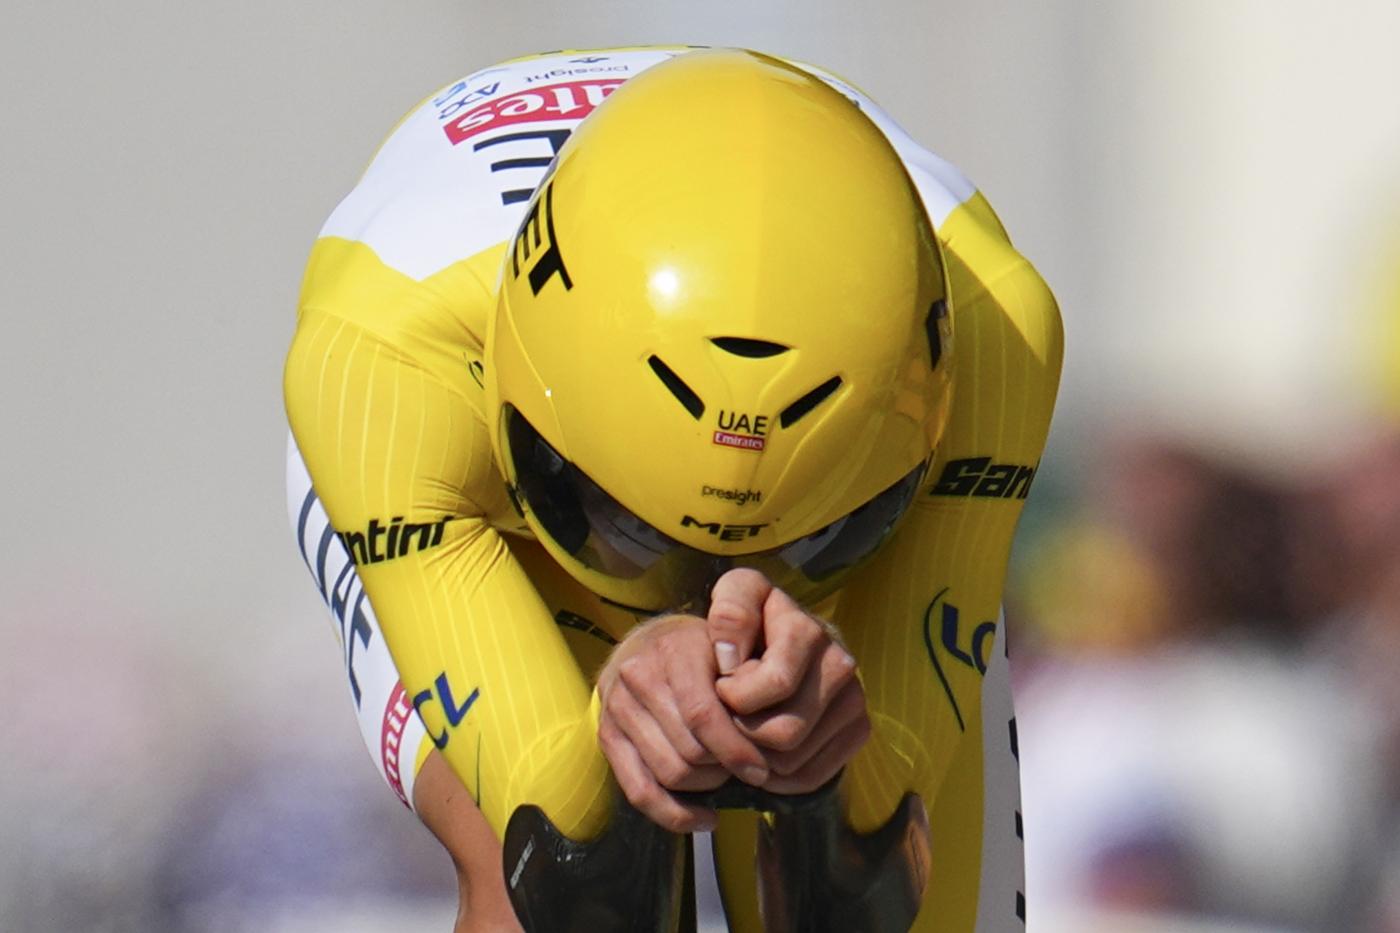 Tadej Pogacar vince anche l’ultima cronometro e timbra la doppietta Giro d’Italia-Tour de France 26 anni dopo Pantani